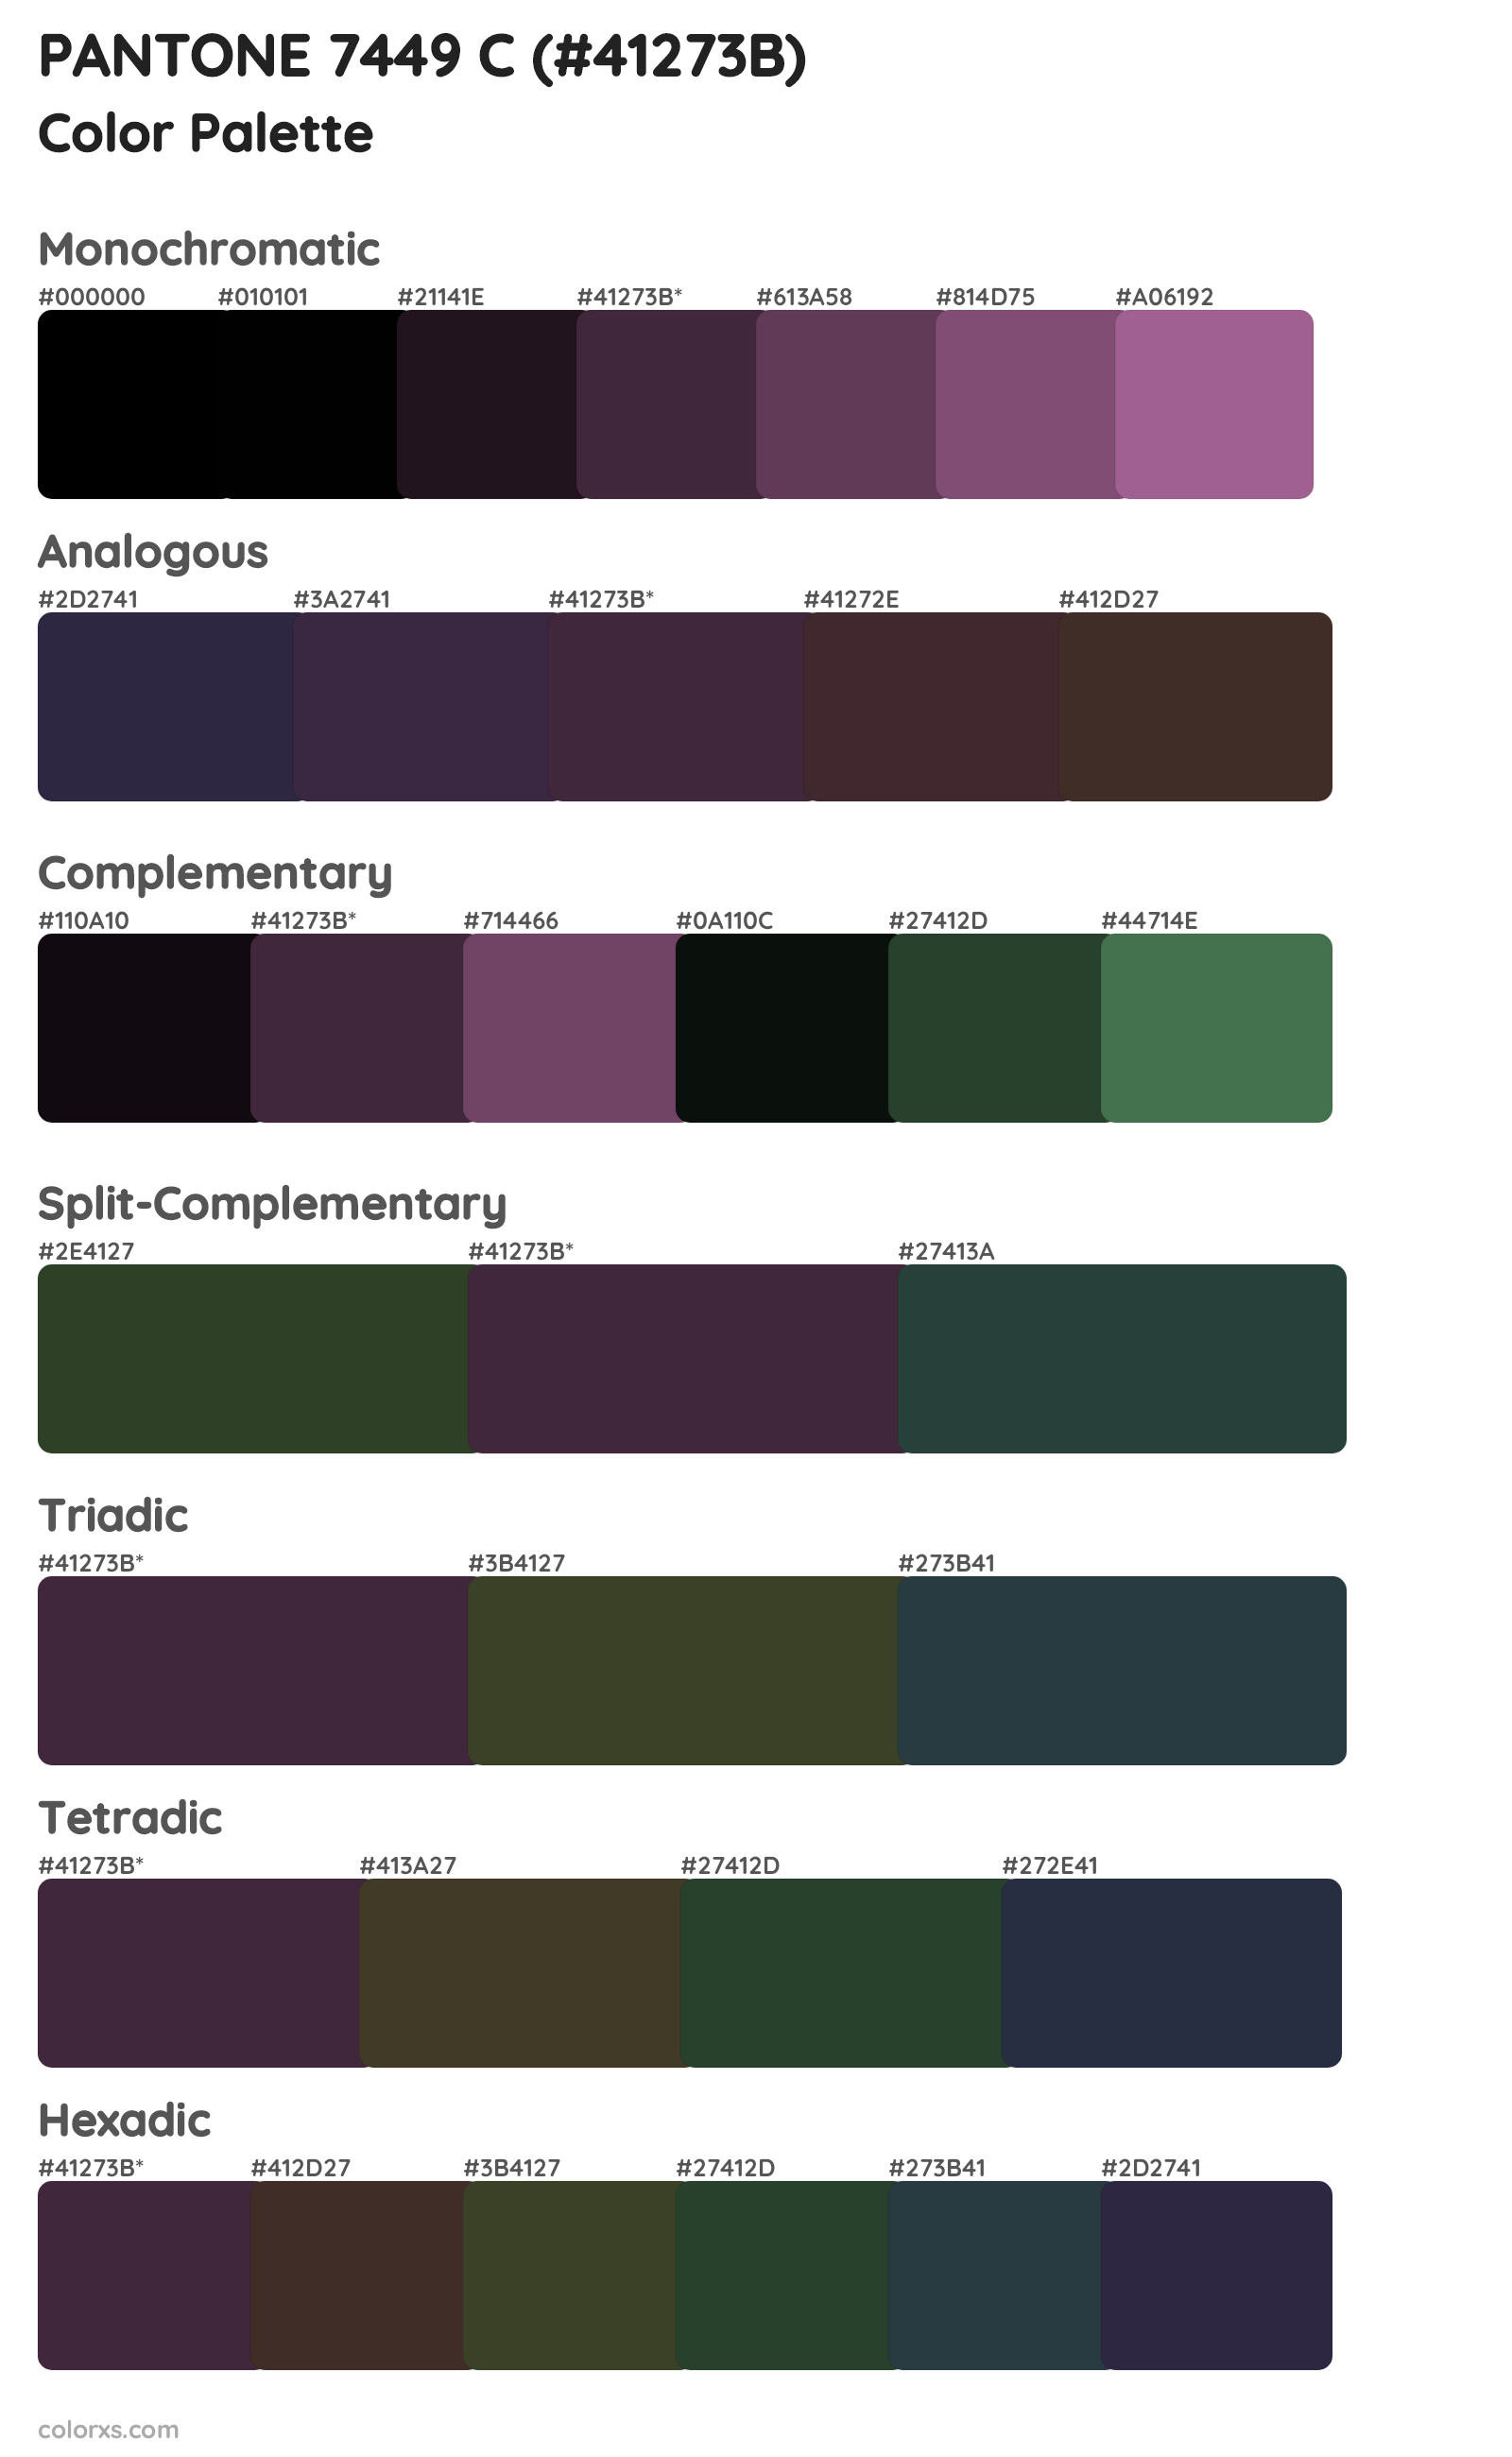 PANTONE 7449 C Color Scheme Palettes